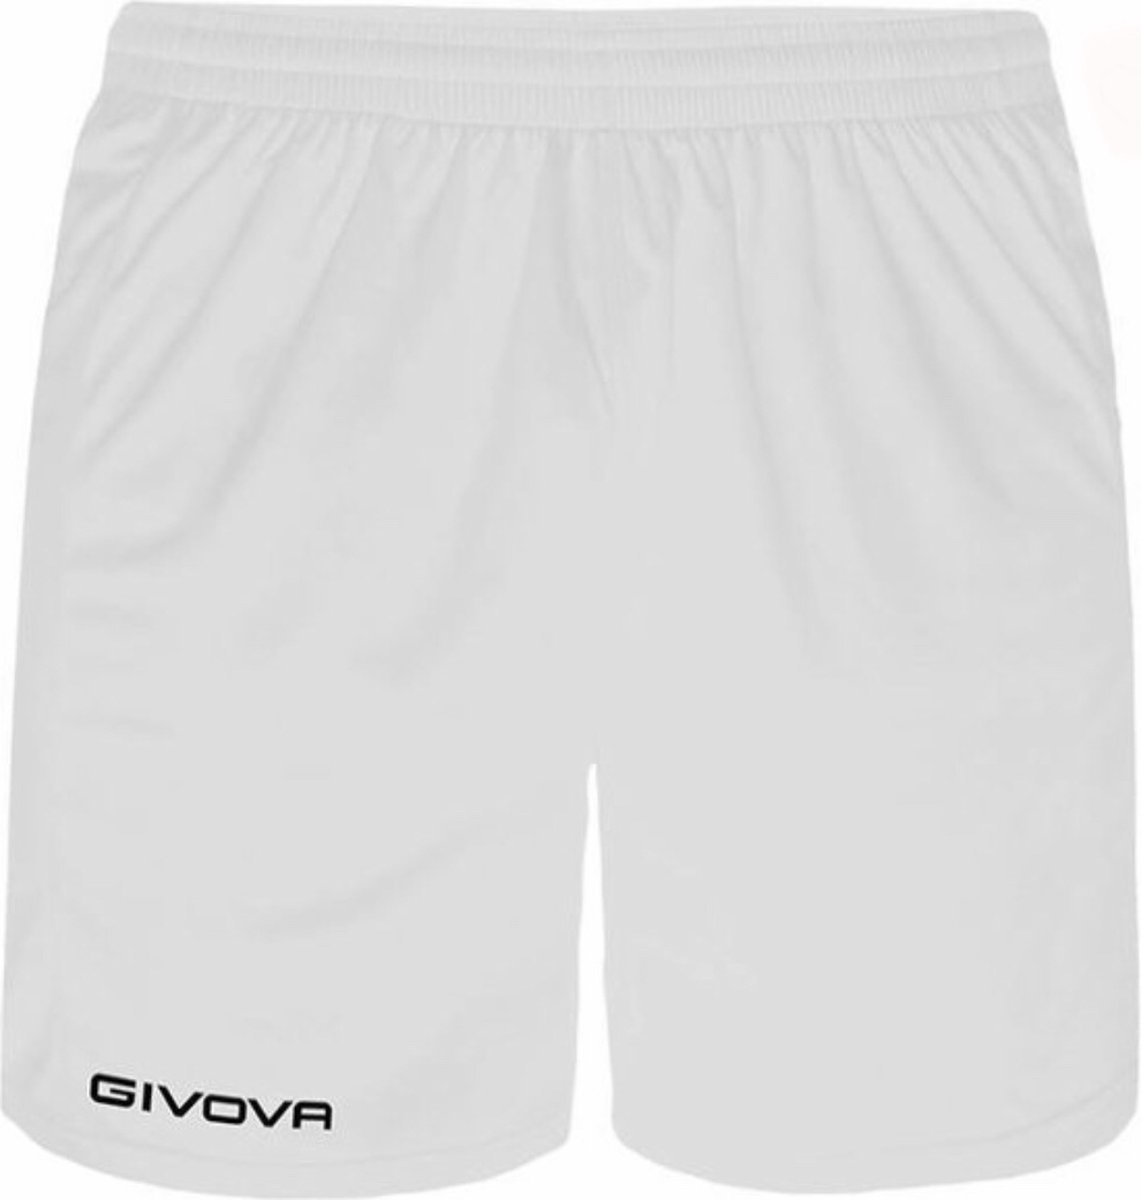 Short Givova Capo, P018, korte broek wit, maat XXL, geborduurd logo